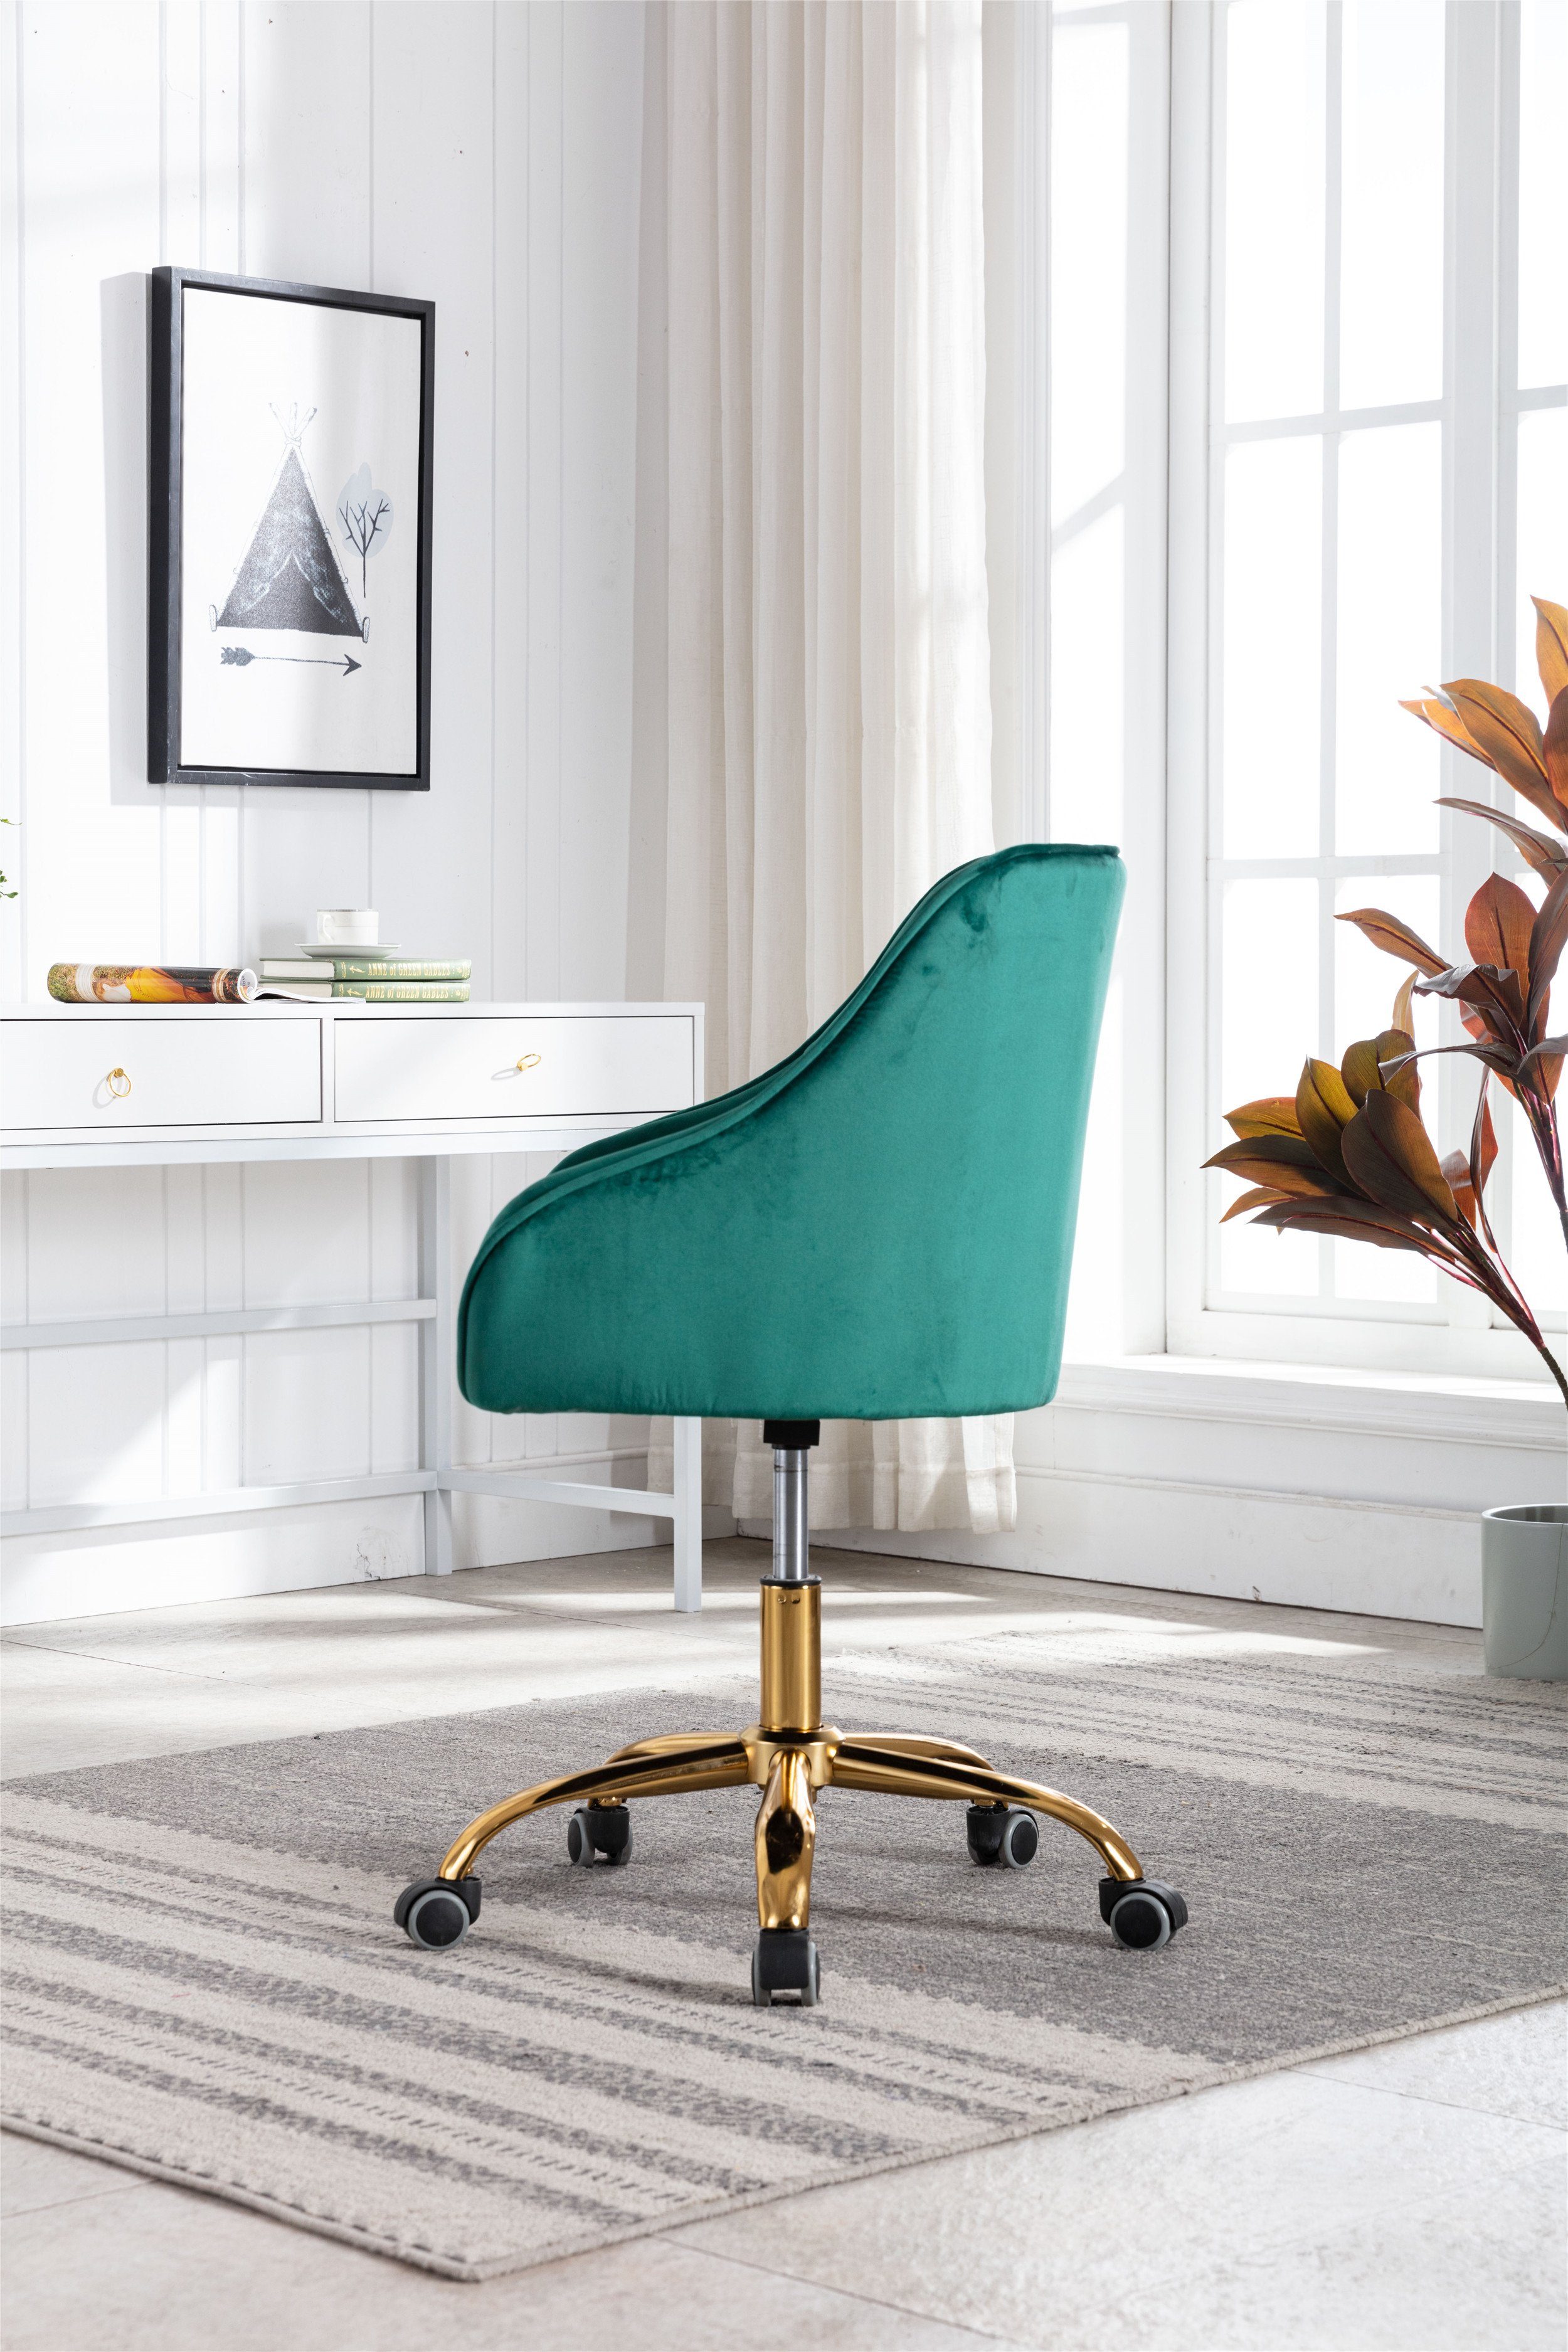 Bürostuhl Grün mehrerer Farbe Samt Odikalo Drehstuhl Schreibtischstuhl Schminkstuhl drehbar